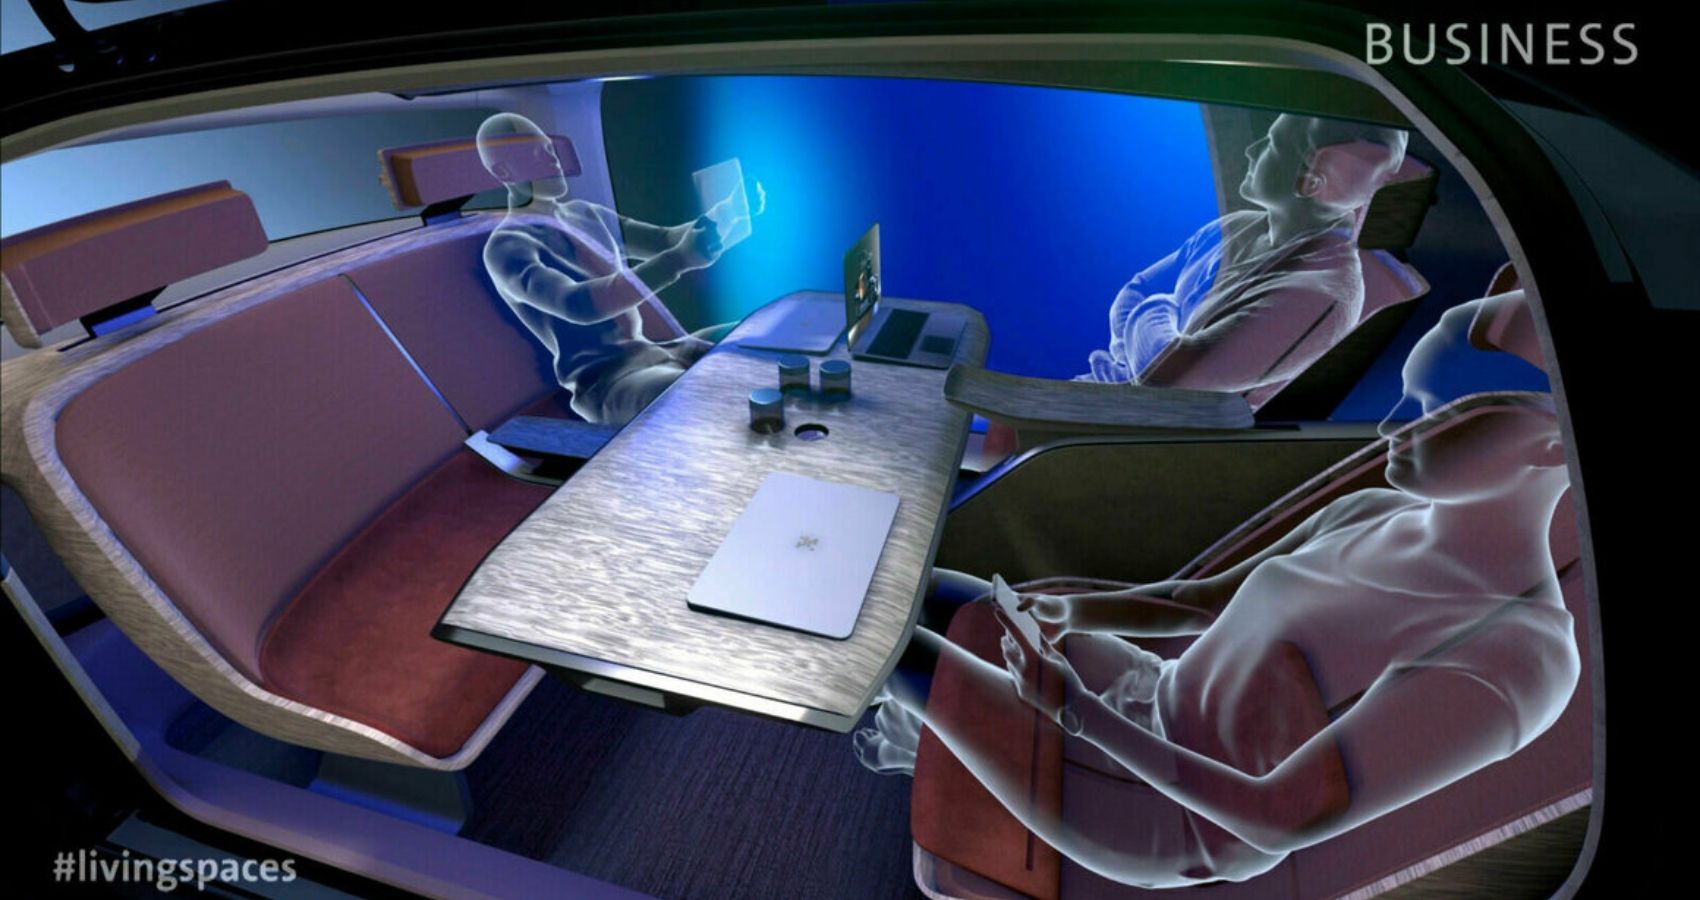 Business seating arrangement of the Volkswagen Gen.Travel concept